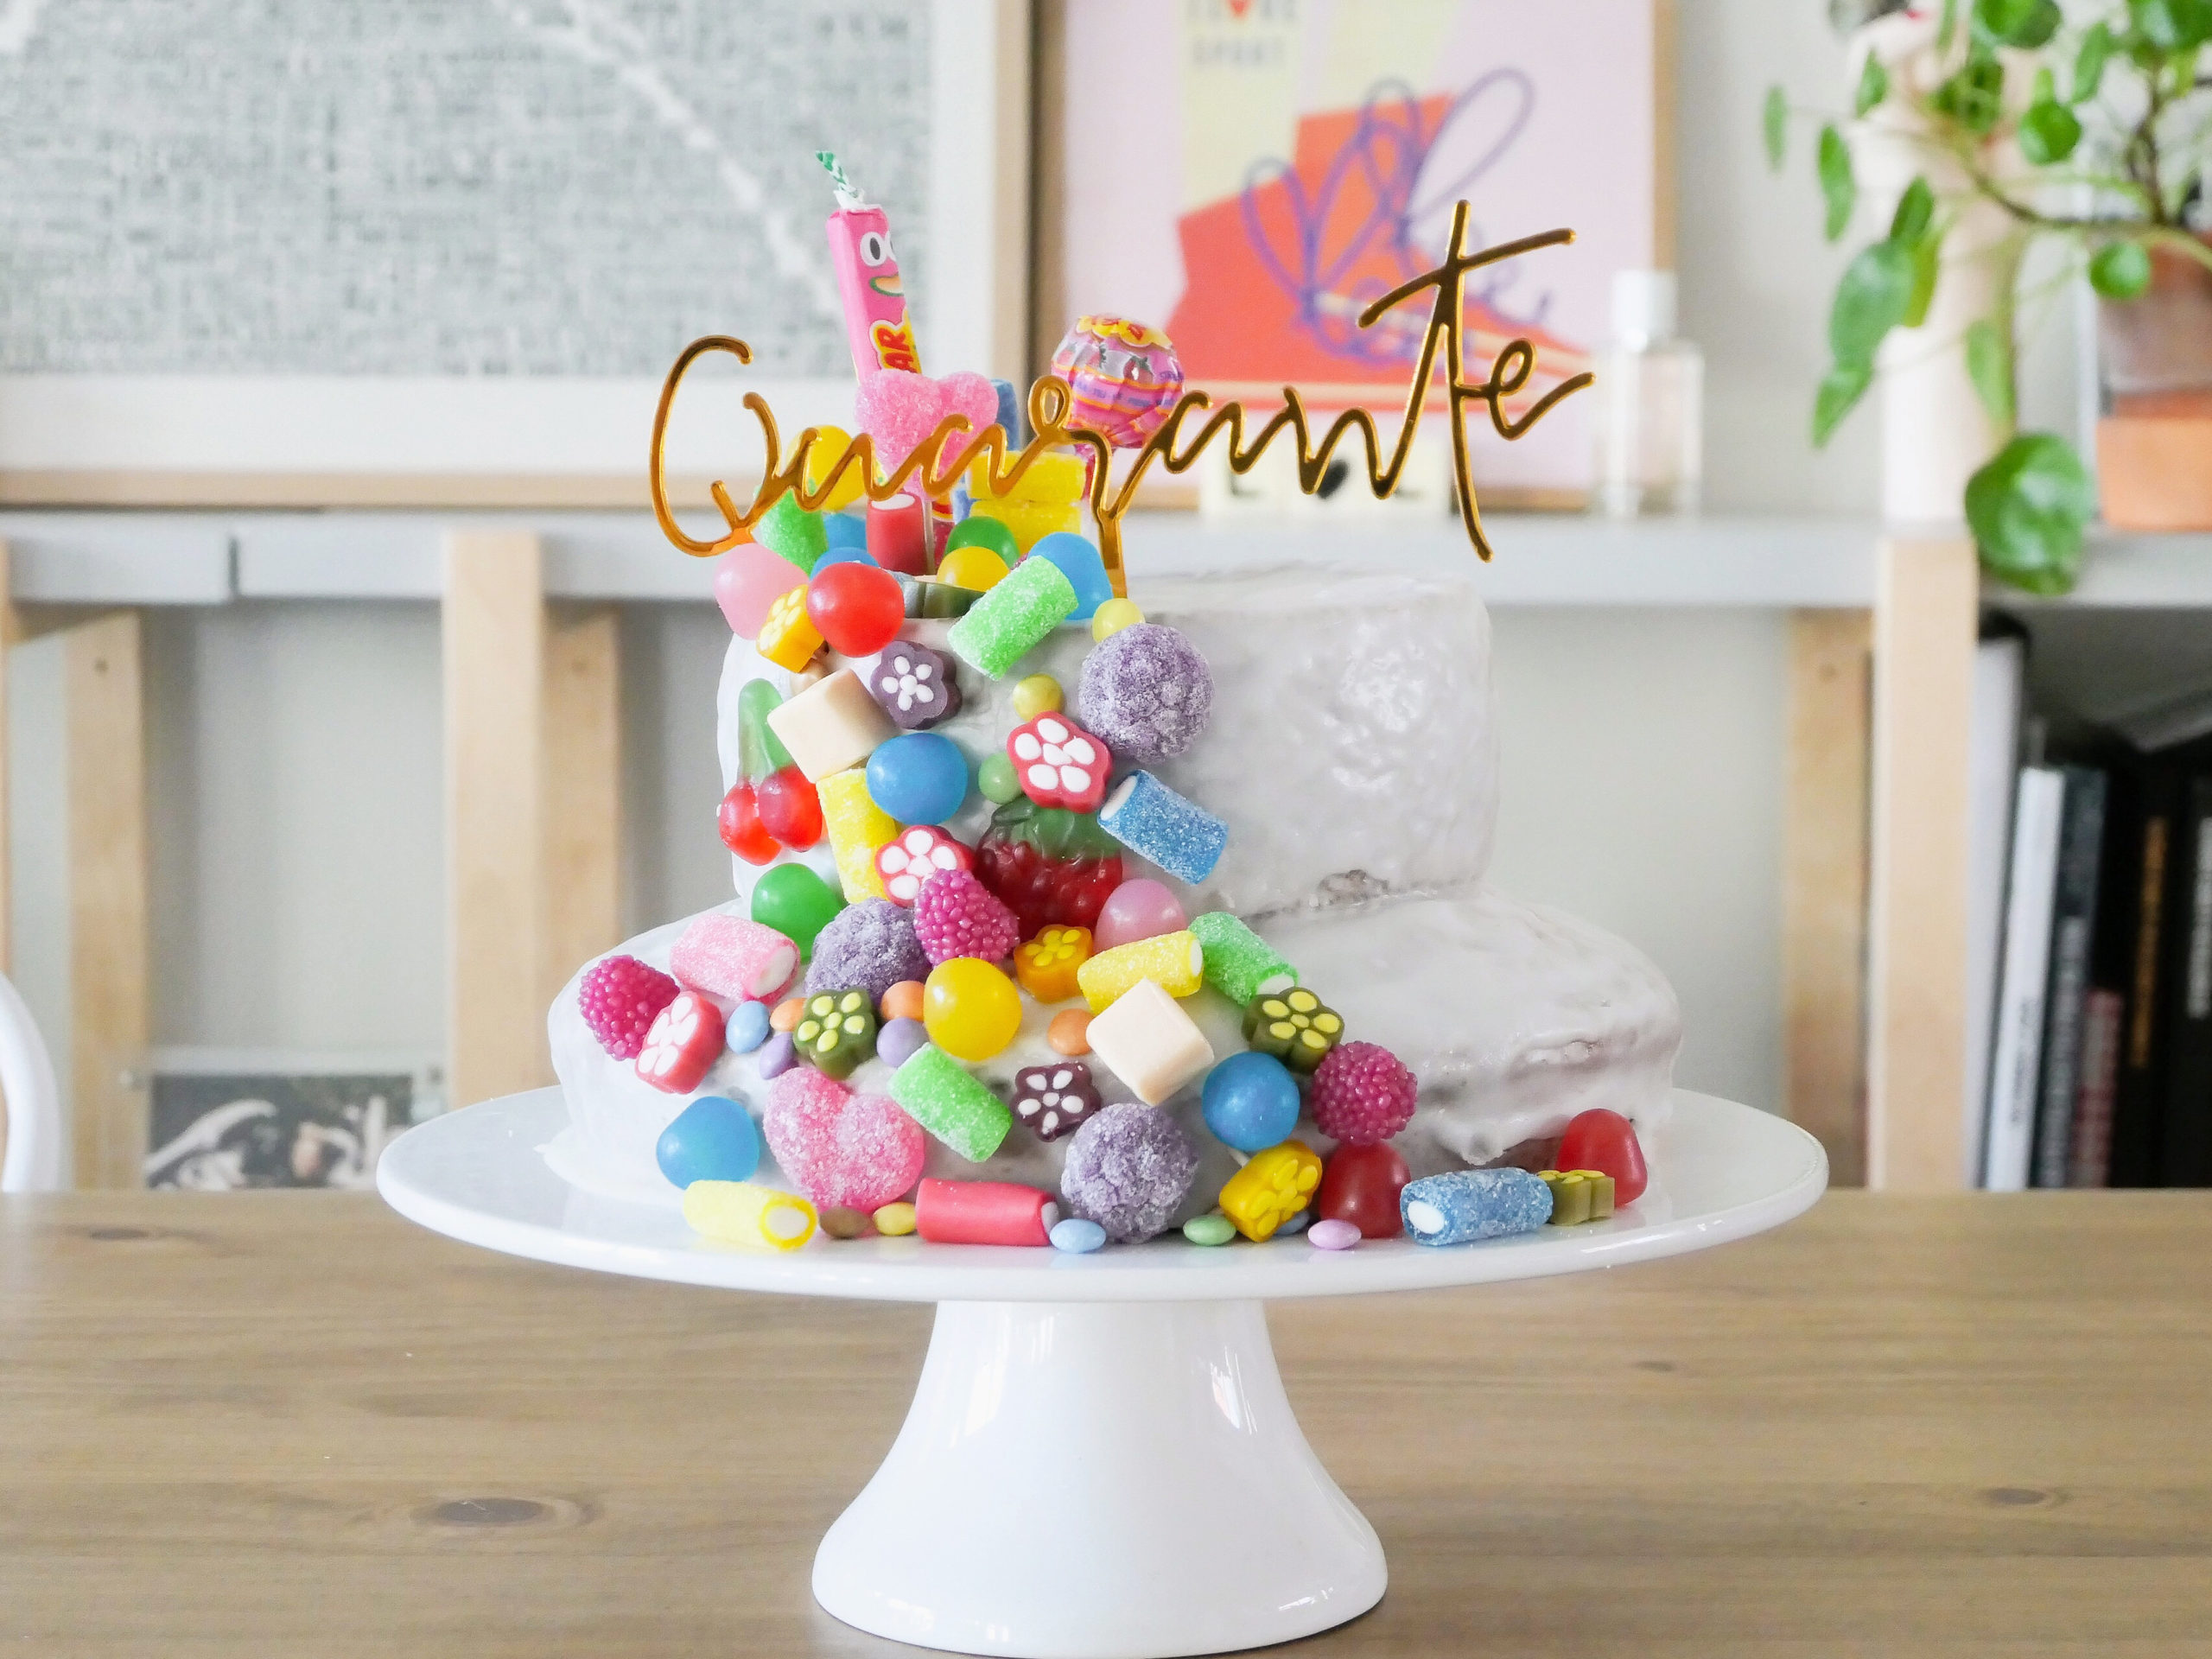 Un gateau d'anniversaire recouvert de bonbons - By Paulette